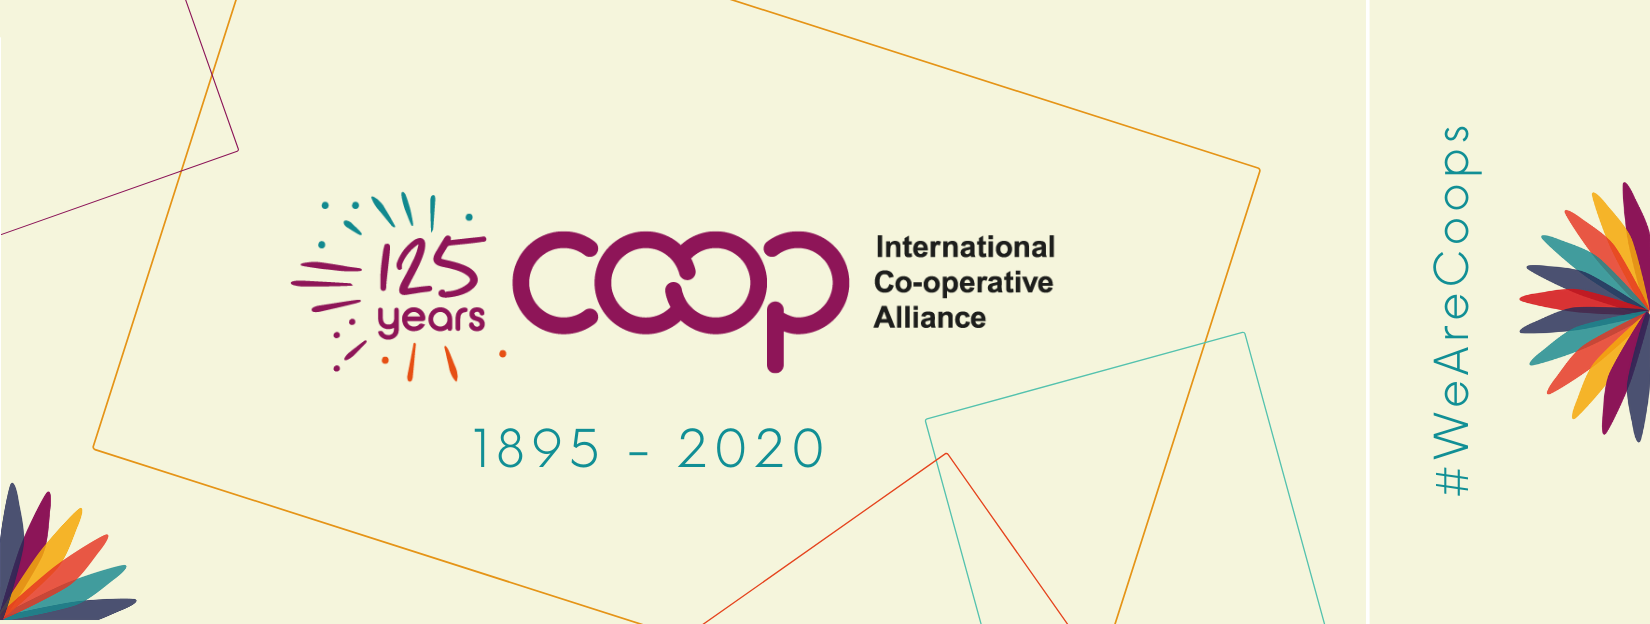 I primi 125 anni dell’International Cooperative Alliance